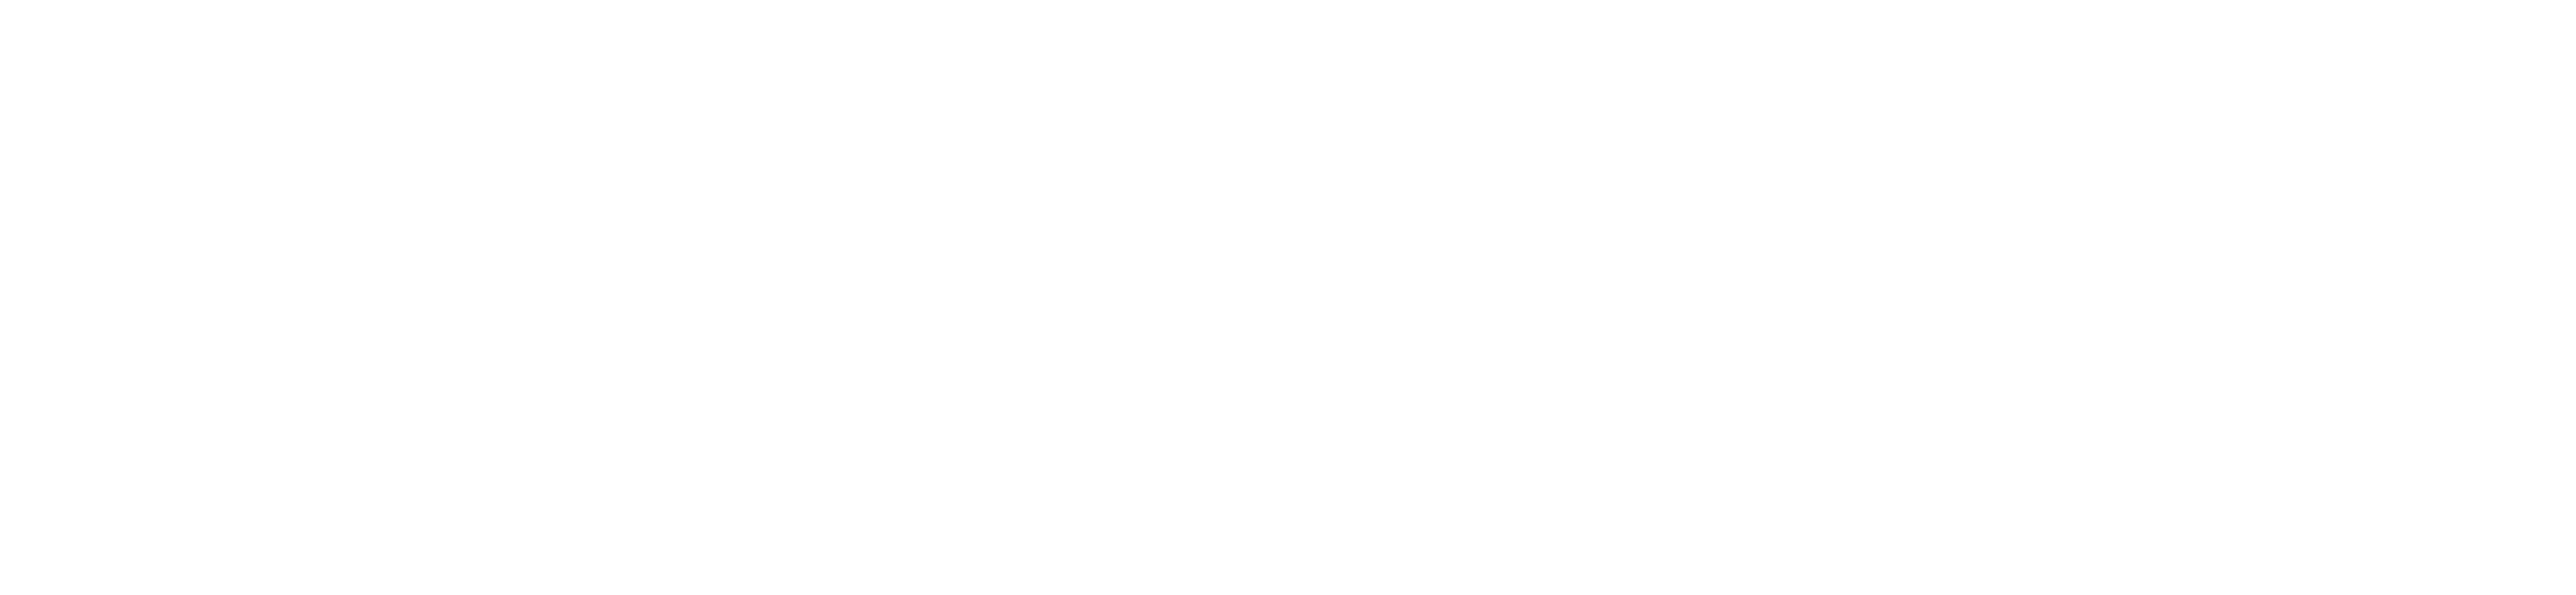 O'Connor Acciani & Levy Logo